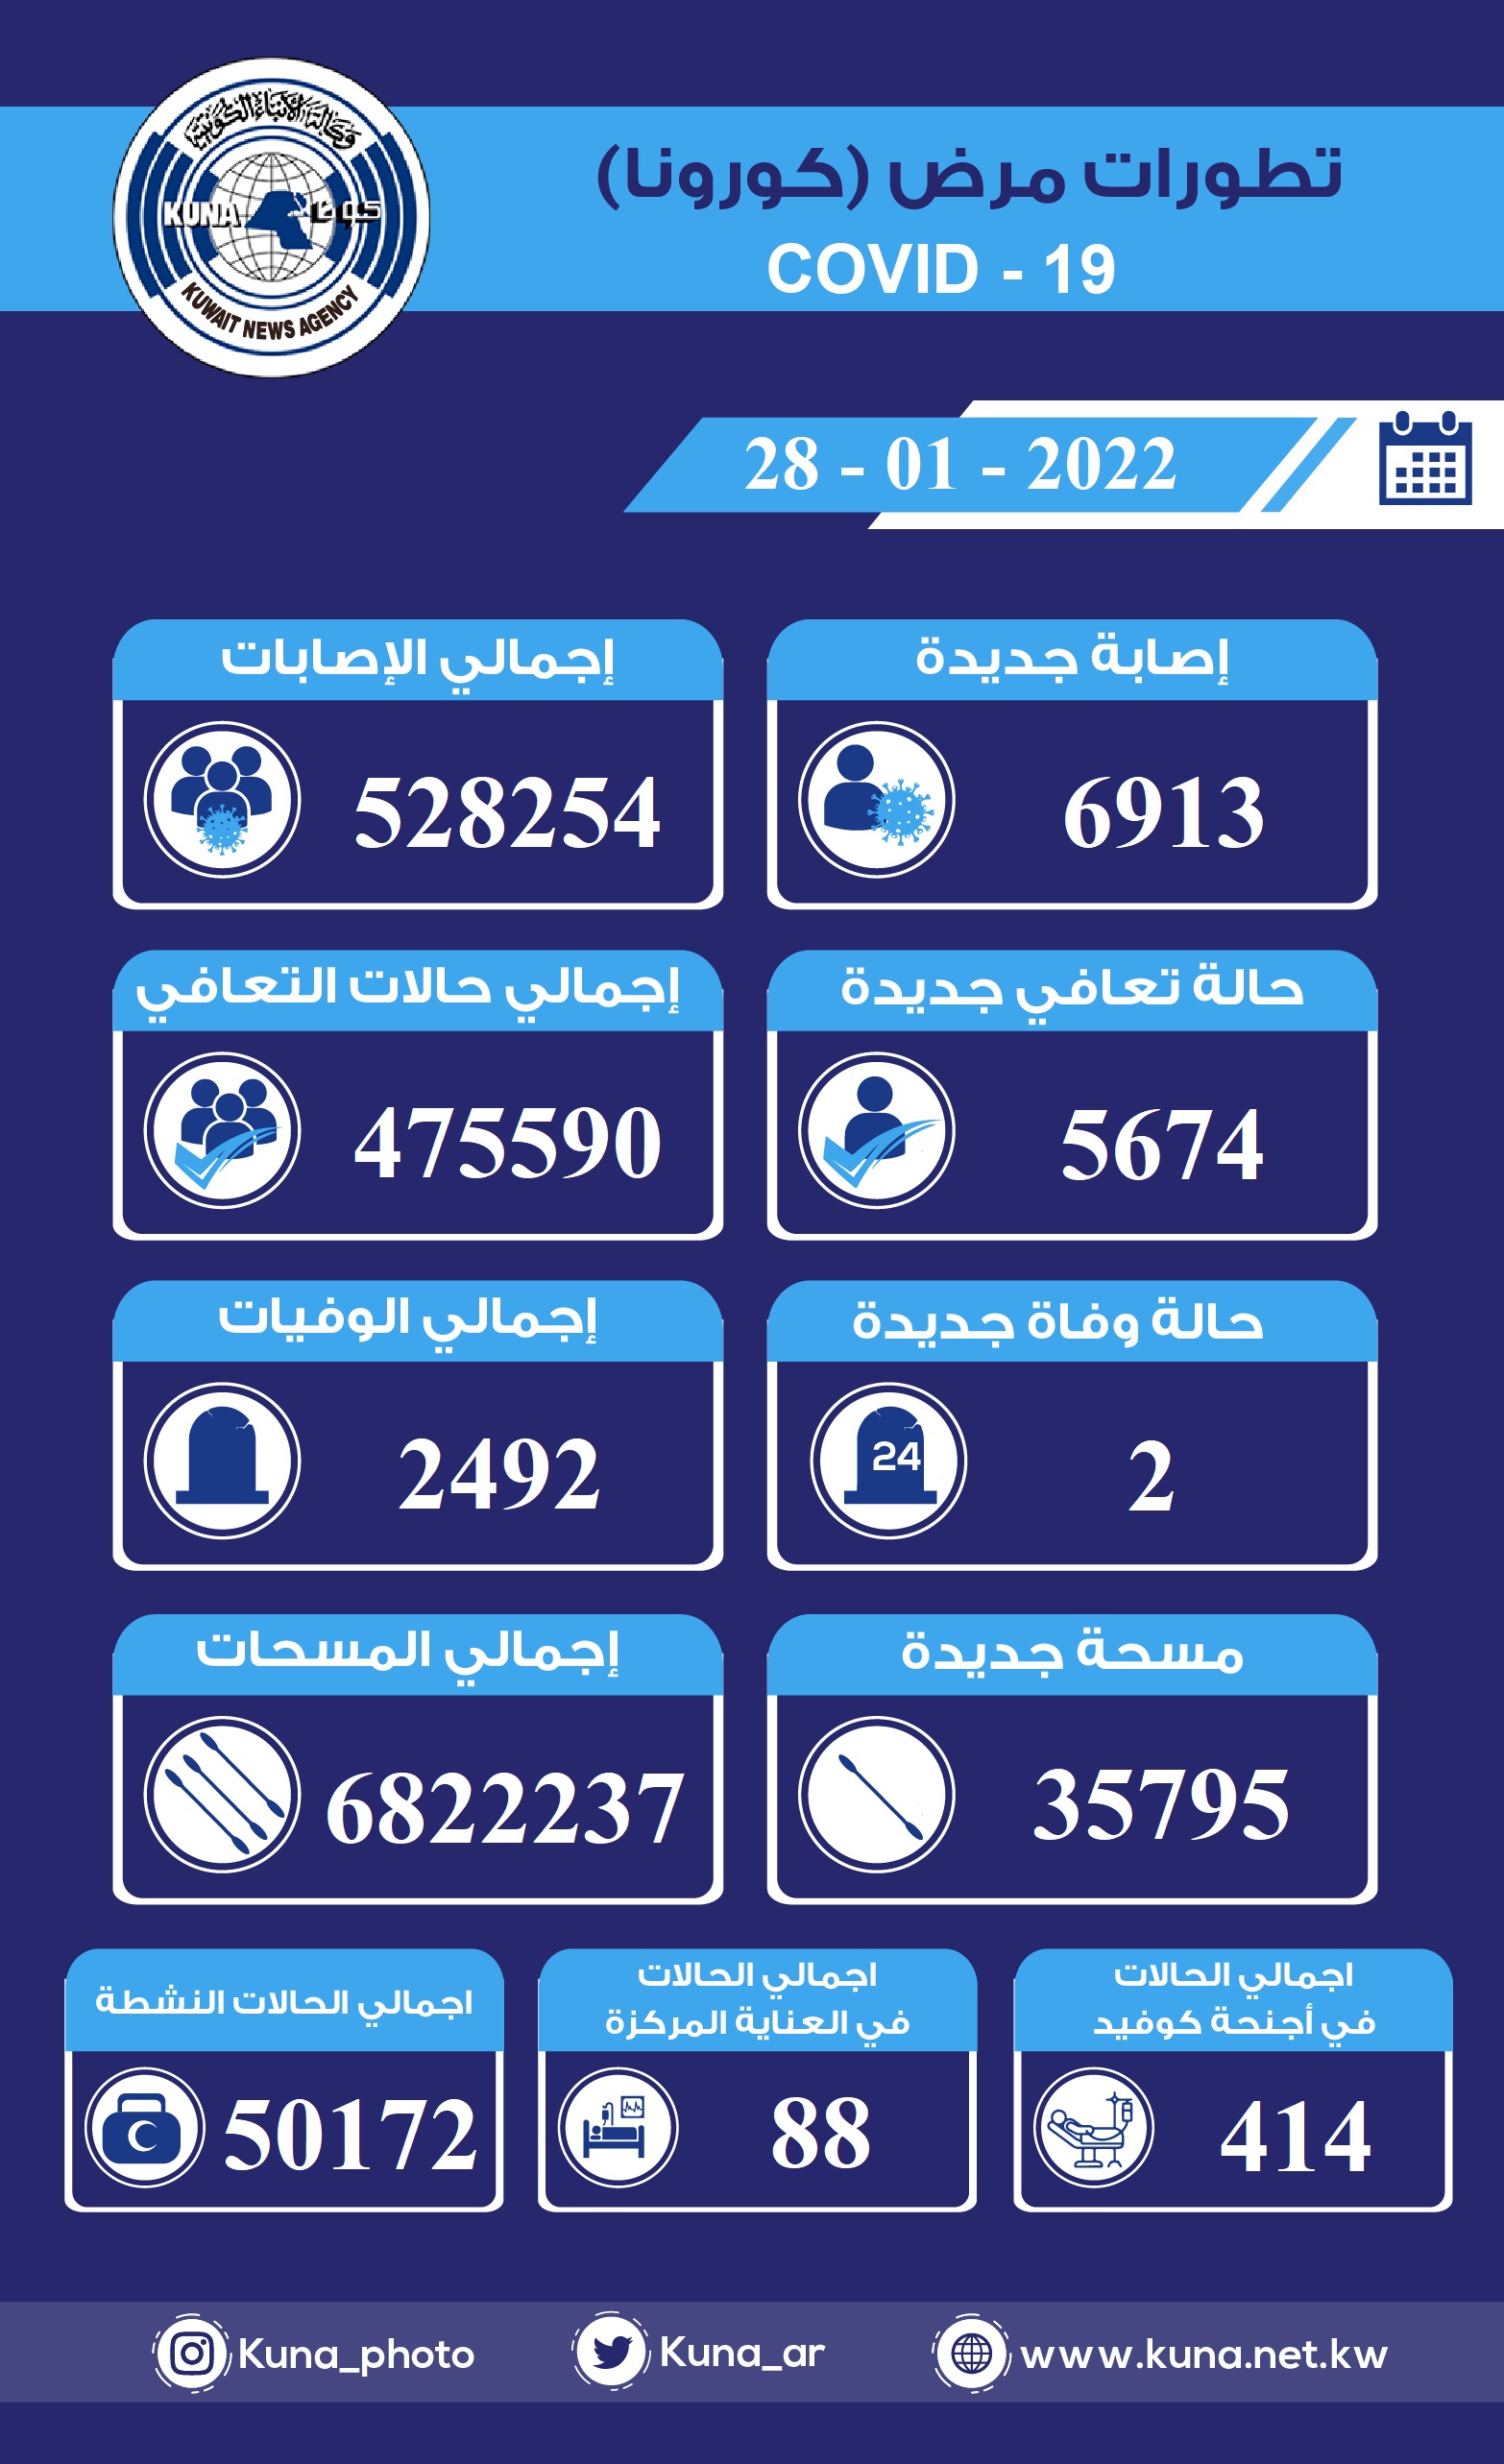 (الصحة) الكويتية: 6913 إصابة جديدة ب(كورونا) وشفاء 5674 وتسجيل حالتي وفاة في ال24 ساعة الماضية                                                                                                                                                            